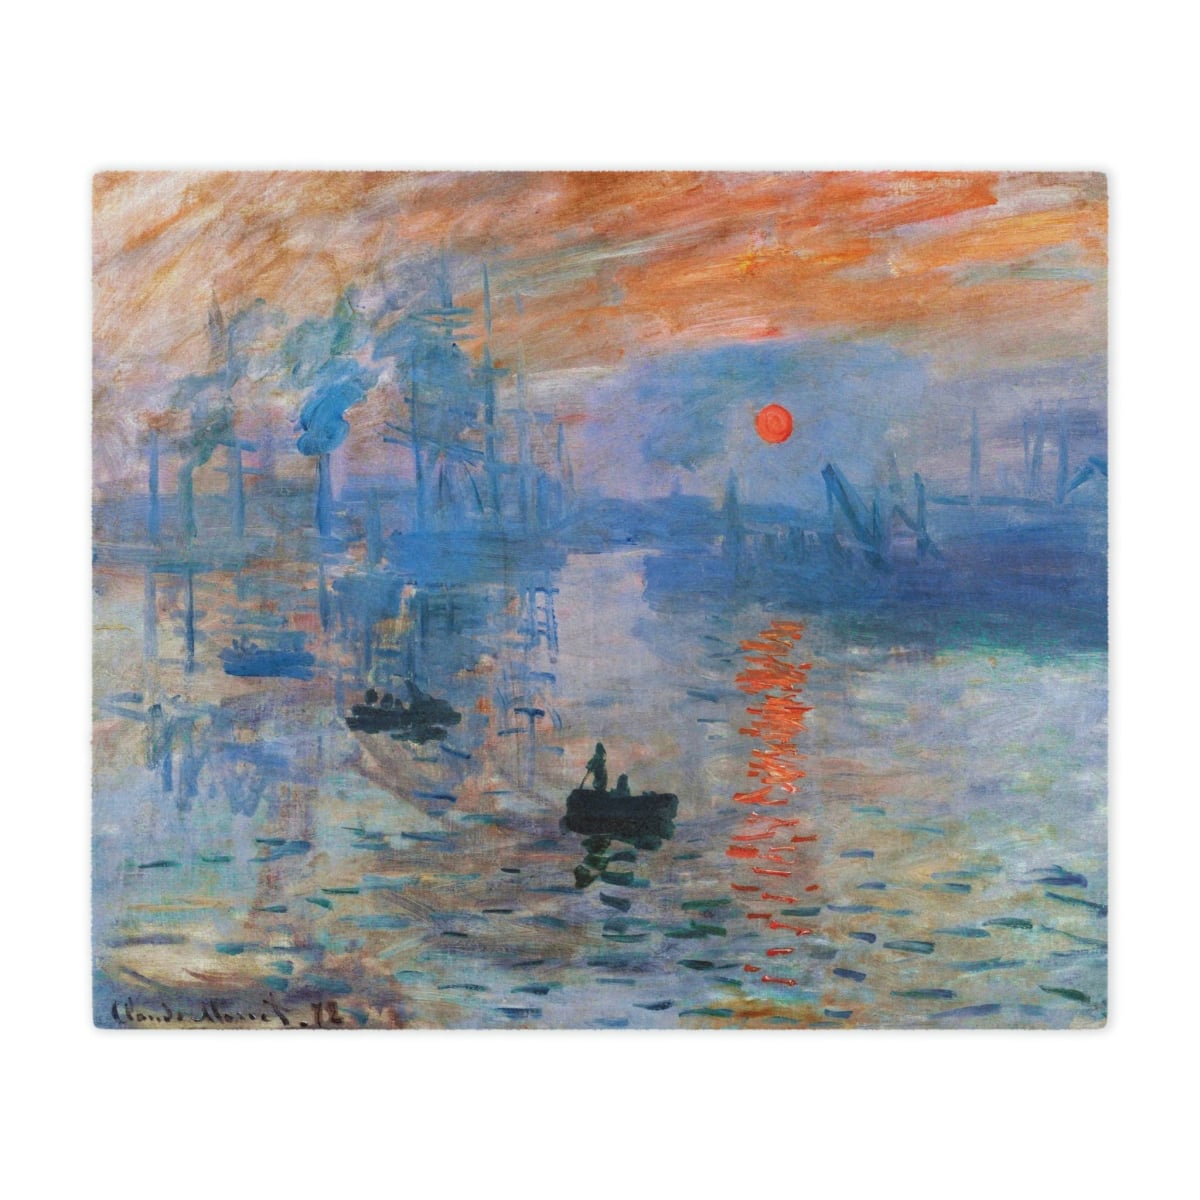 Monet Art Lover's Gift - Impression Sunrise Blanket